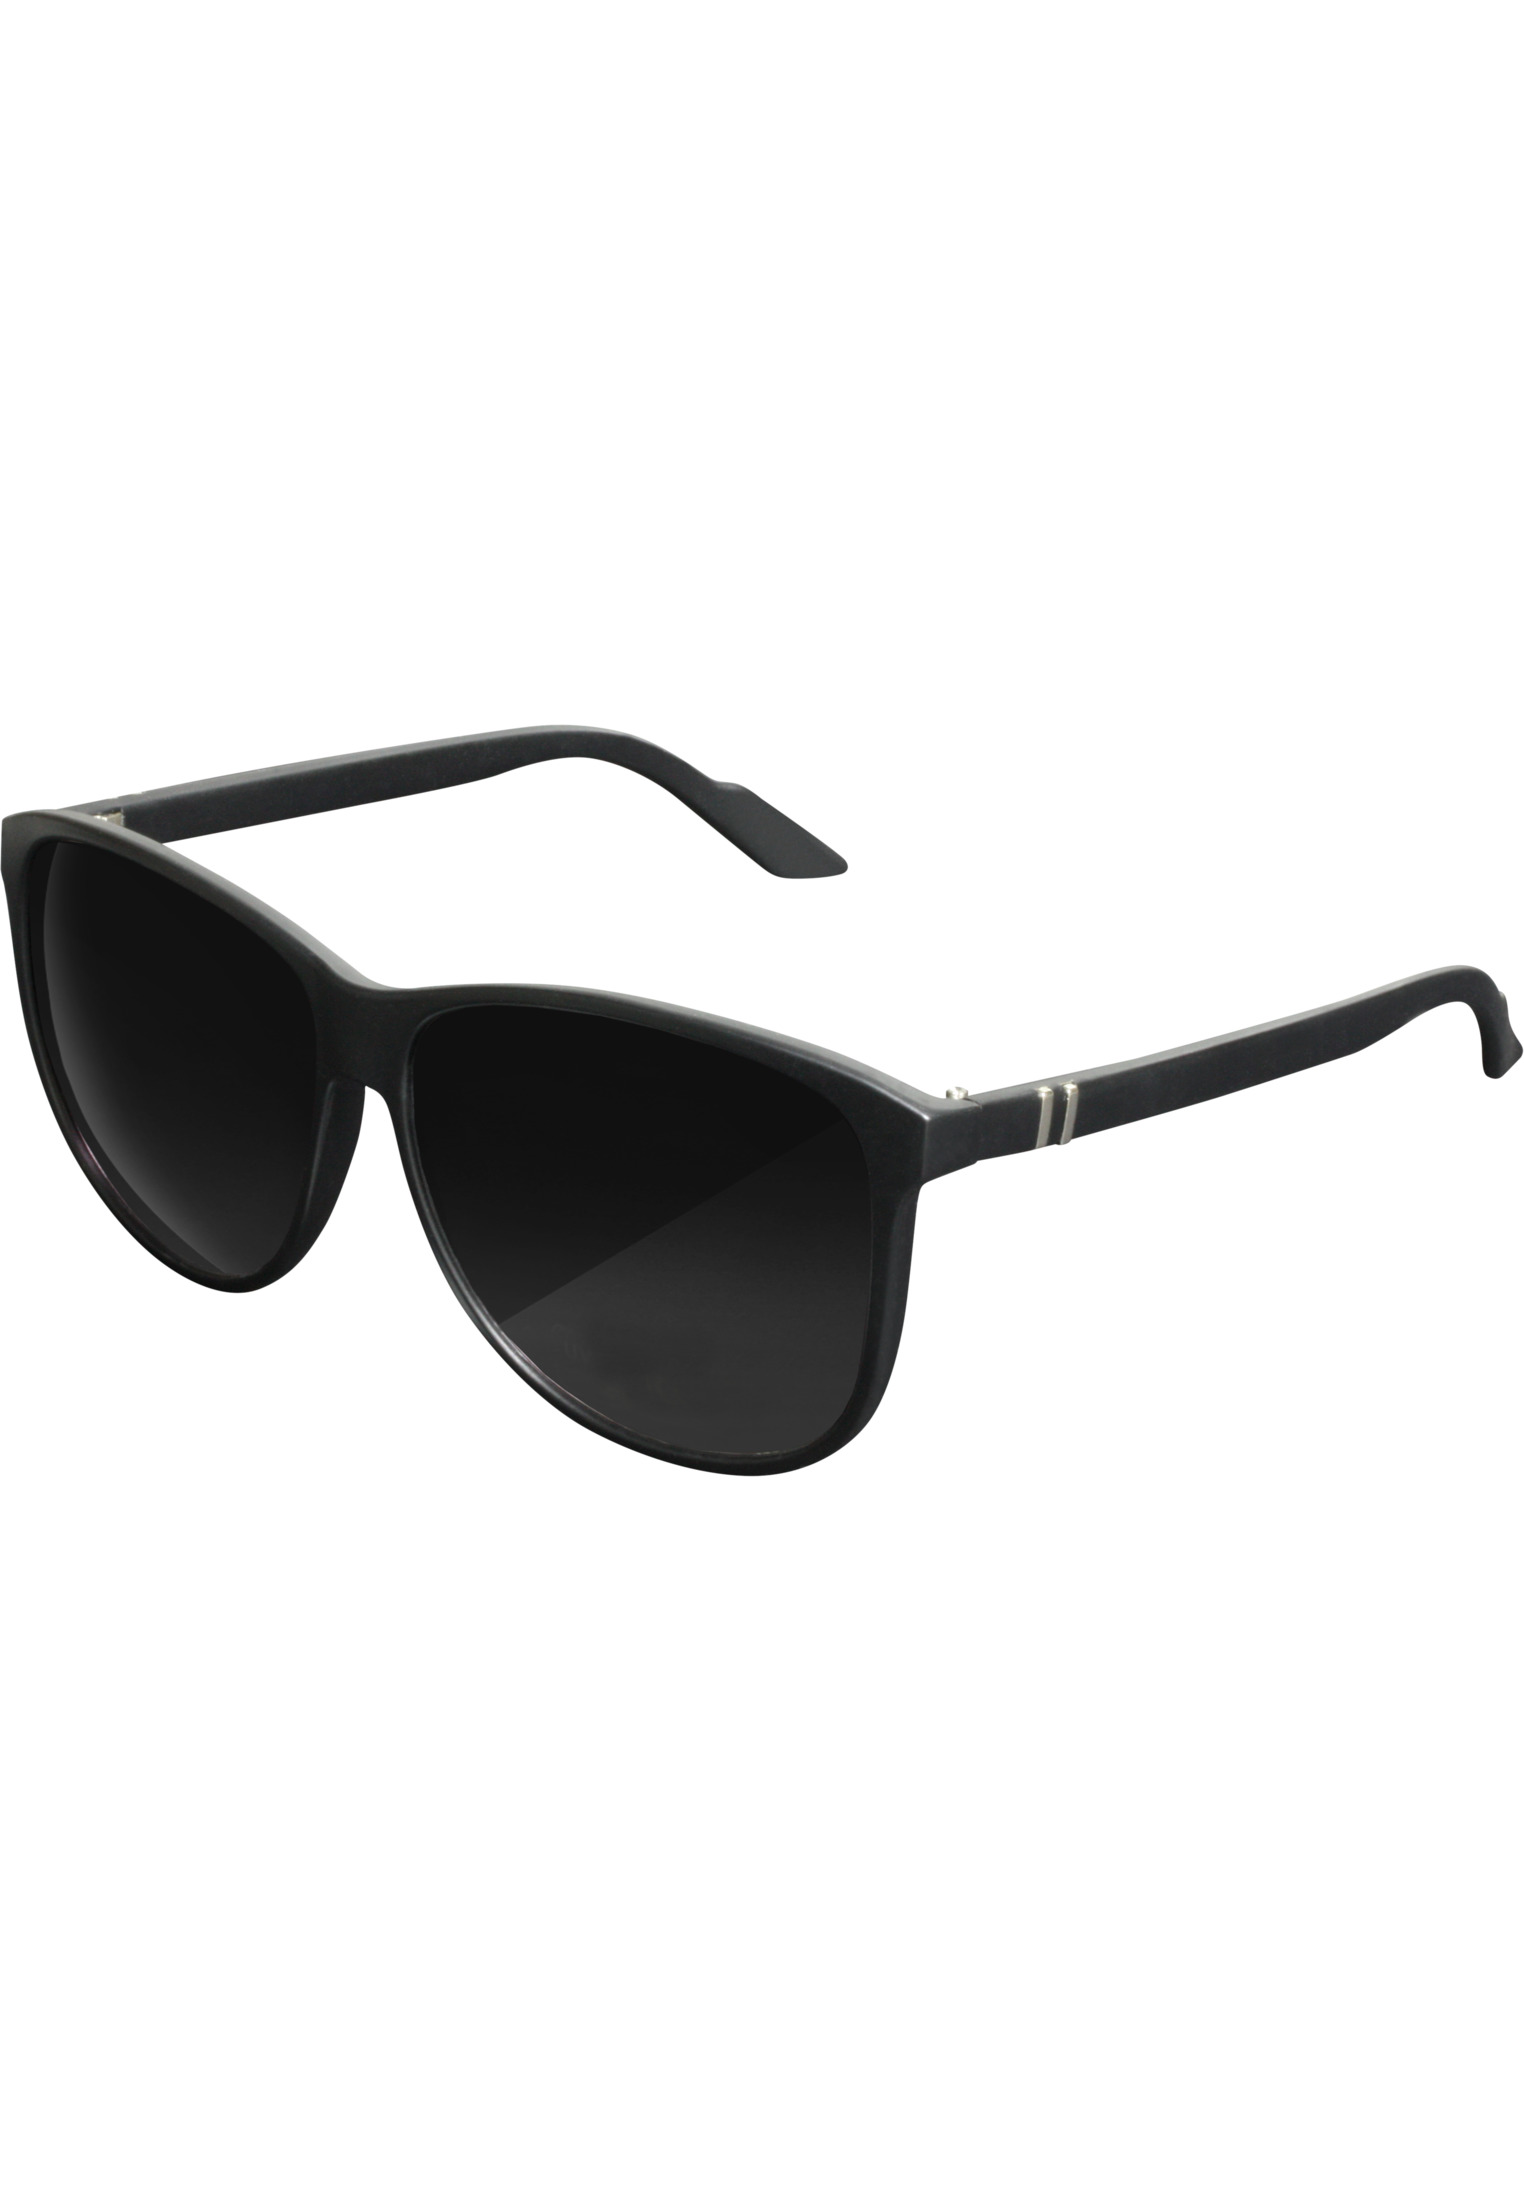 T10312 Sunglasses | Chirwa